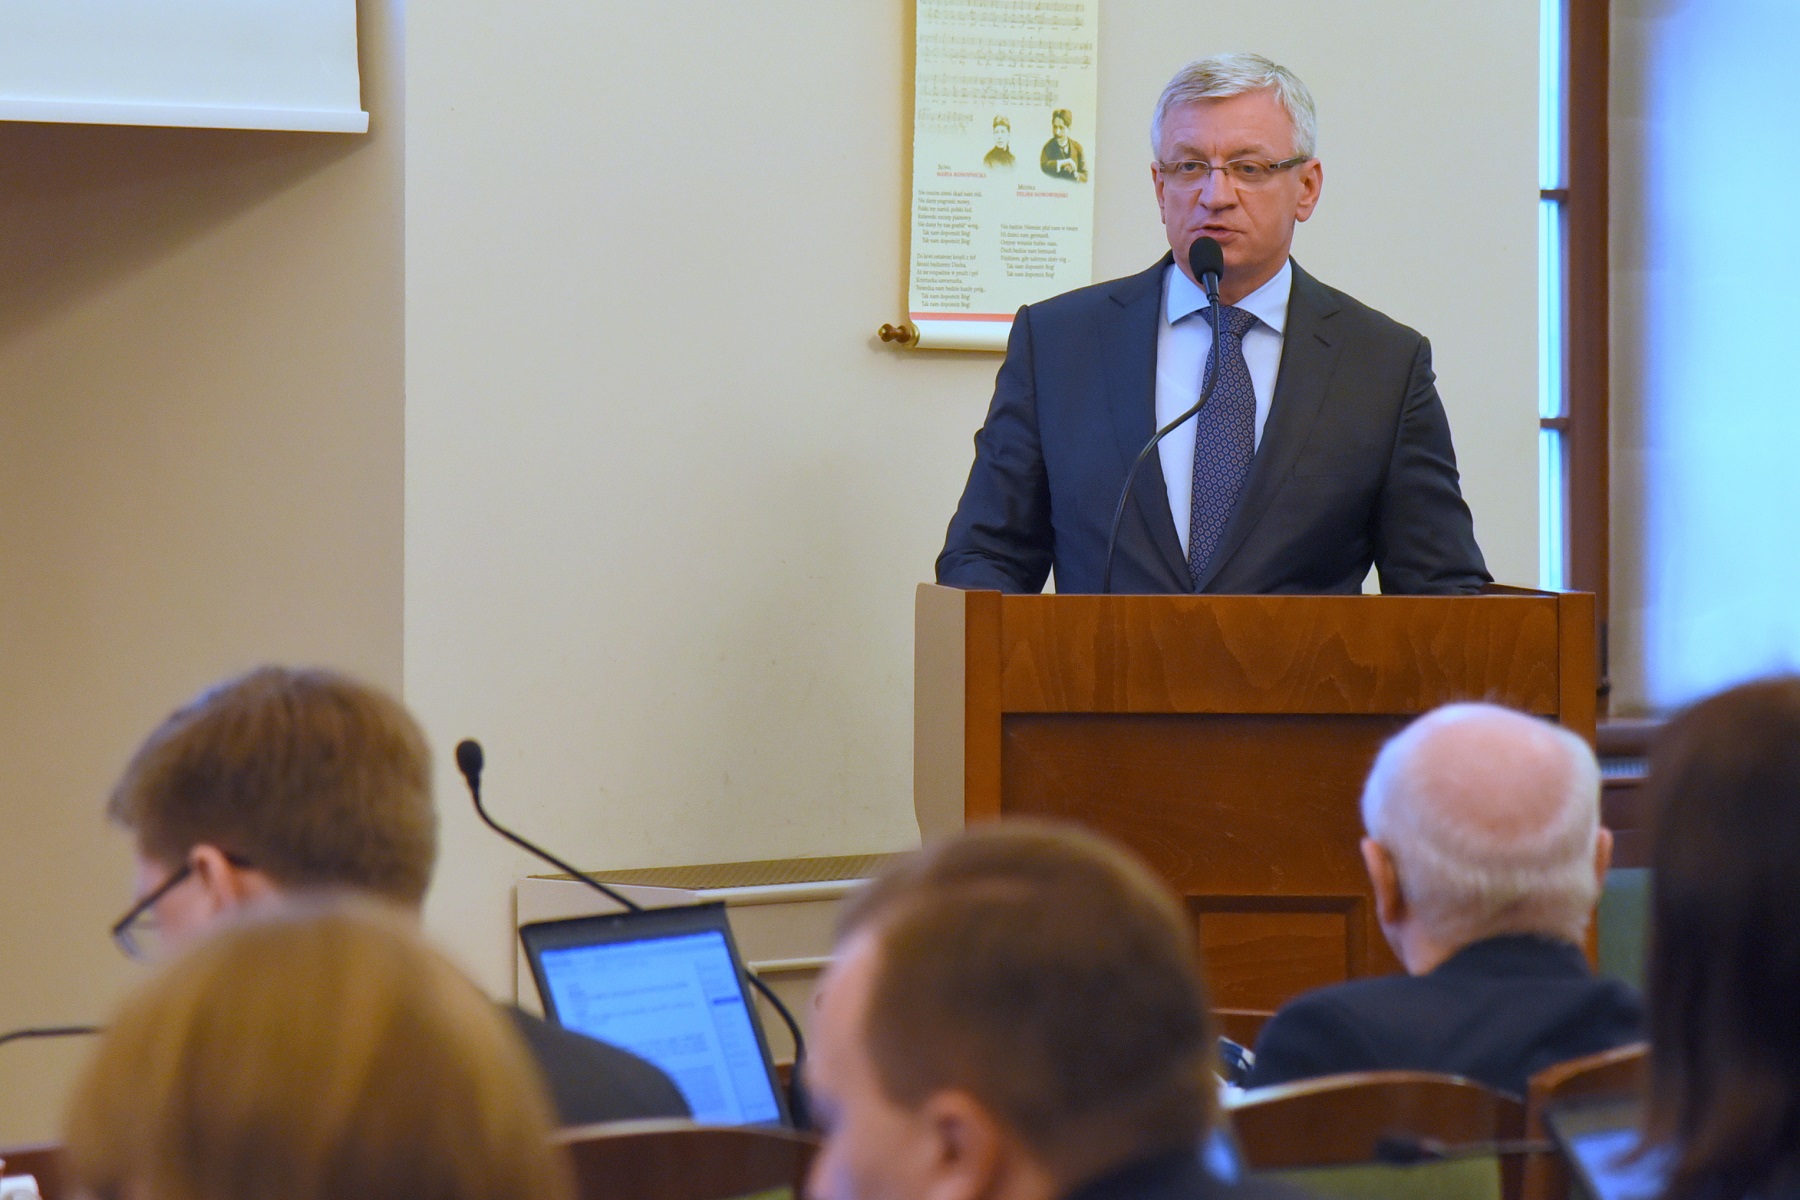 Podczas grudniowej sesji radni przyjęli projekt budżetu Poznania na 2018 rok. Jacek Jaśkowiak, prezydent miasta, prosił na sesji o głosowanie ponad podziałami politycznymi - grafika artykułu